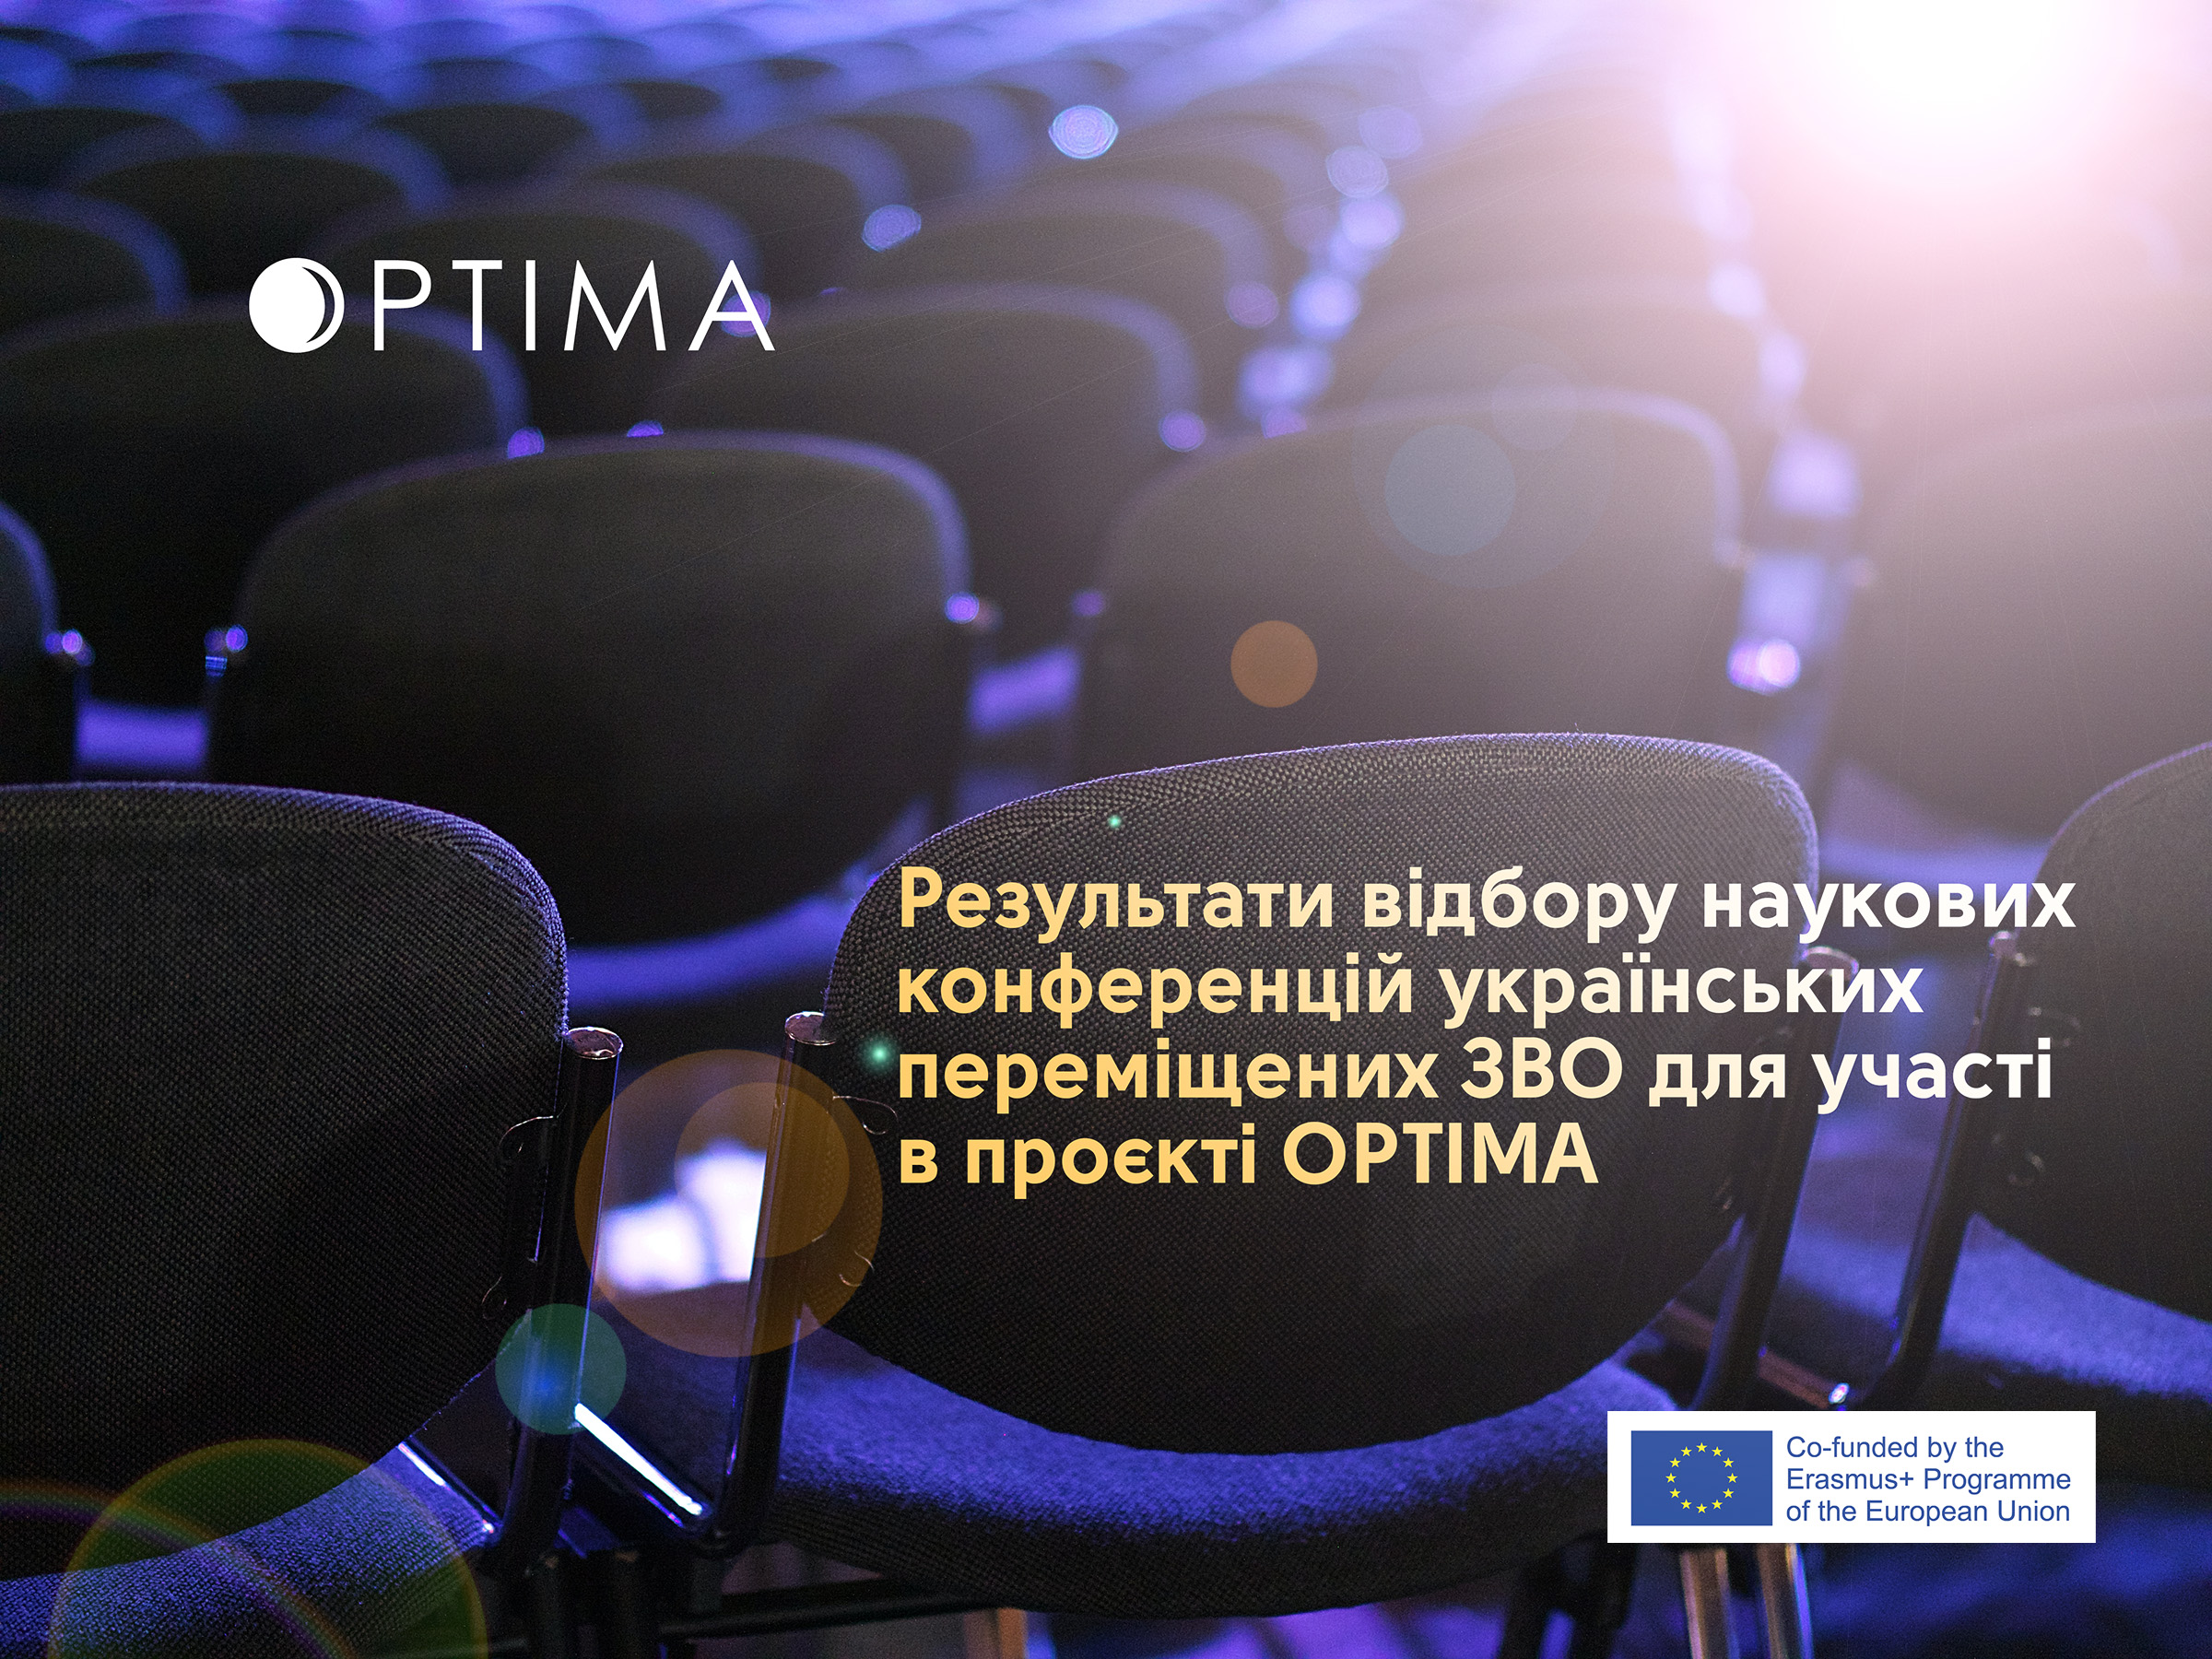 Оголошено результати першого відбору наукових конференцій українських переміщених закладів вищої освіти для участі в проєкті OPTIMA.